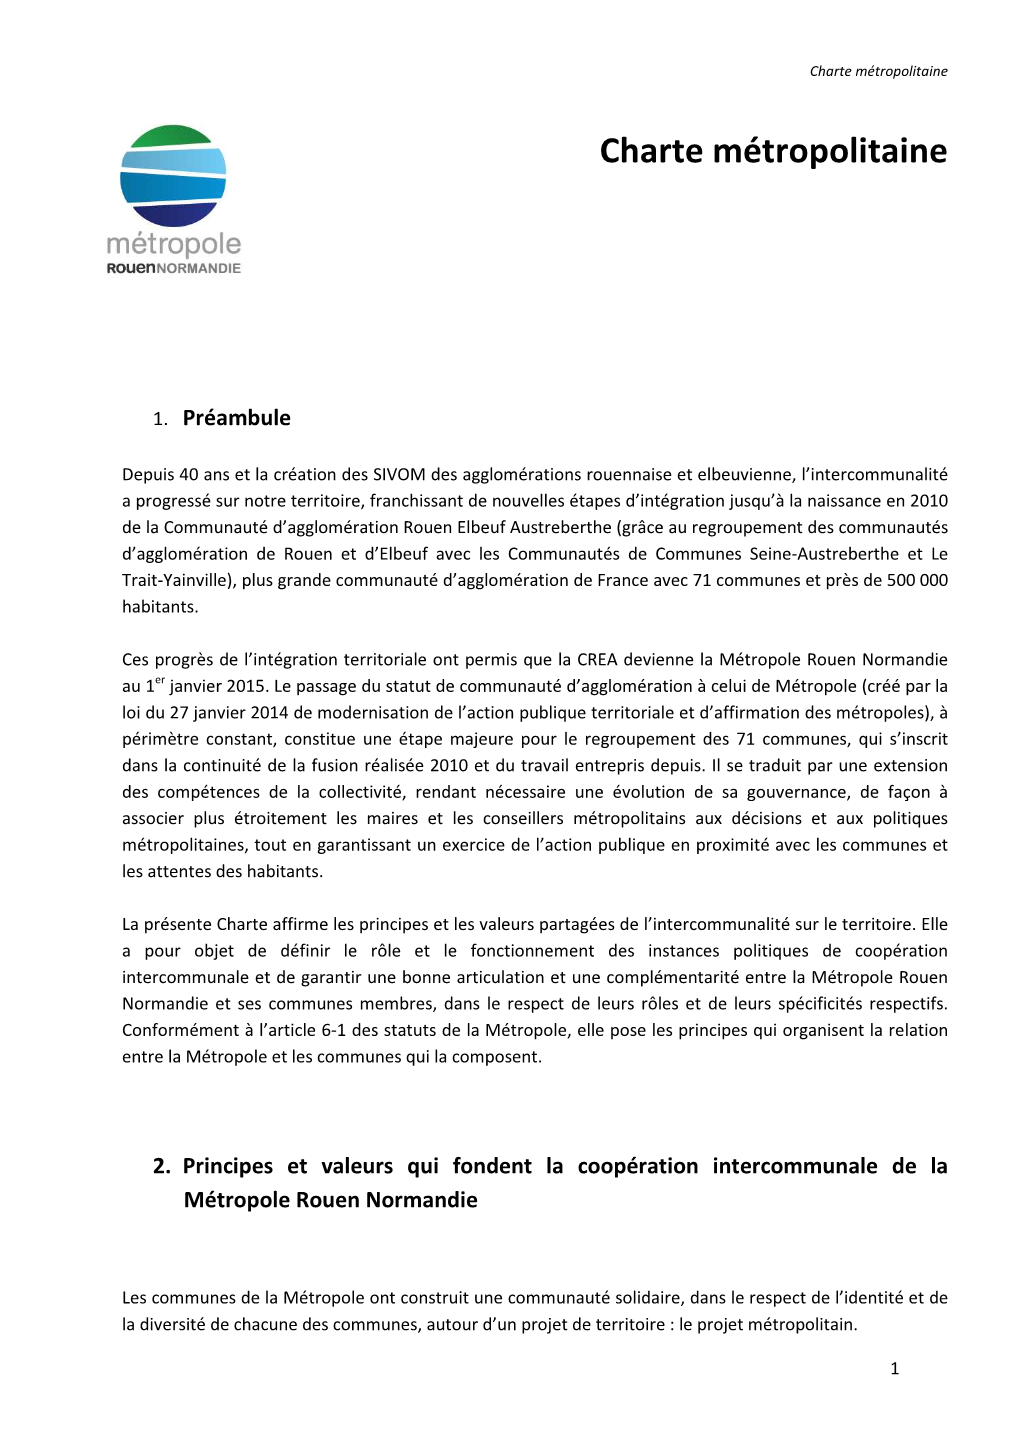 Charte De Gouvernance De La Métropole Rouen Normandie